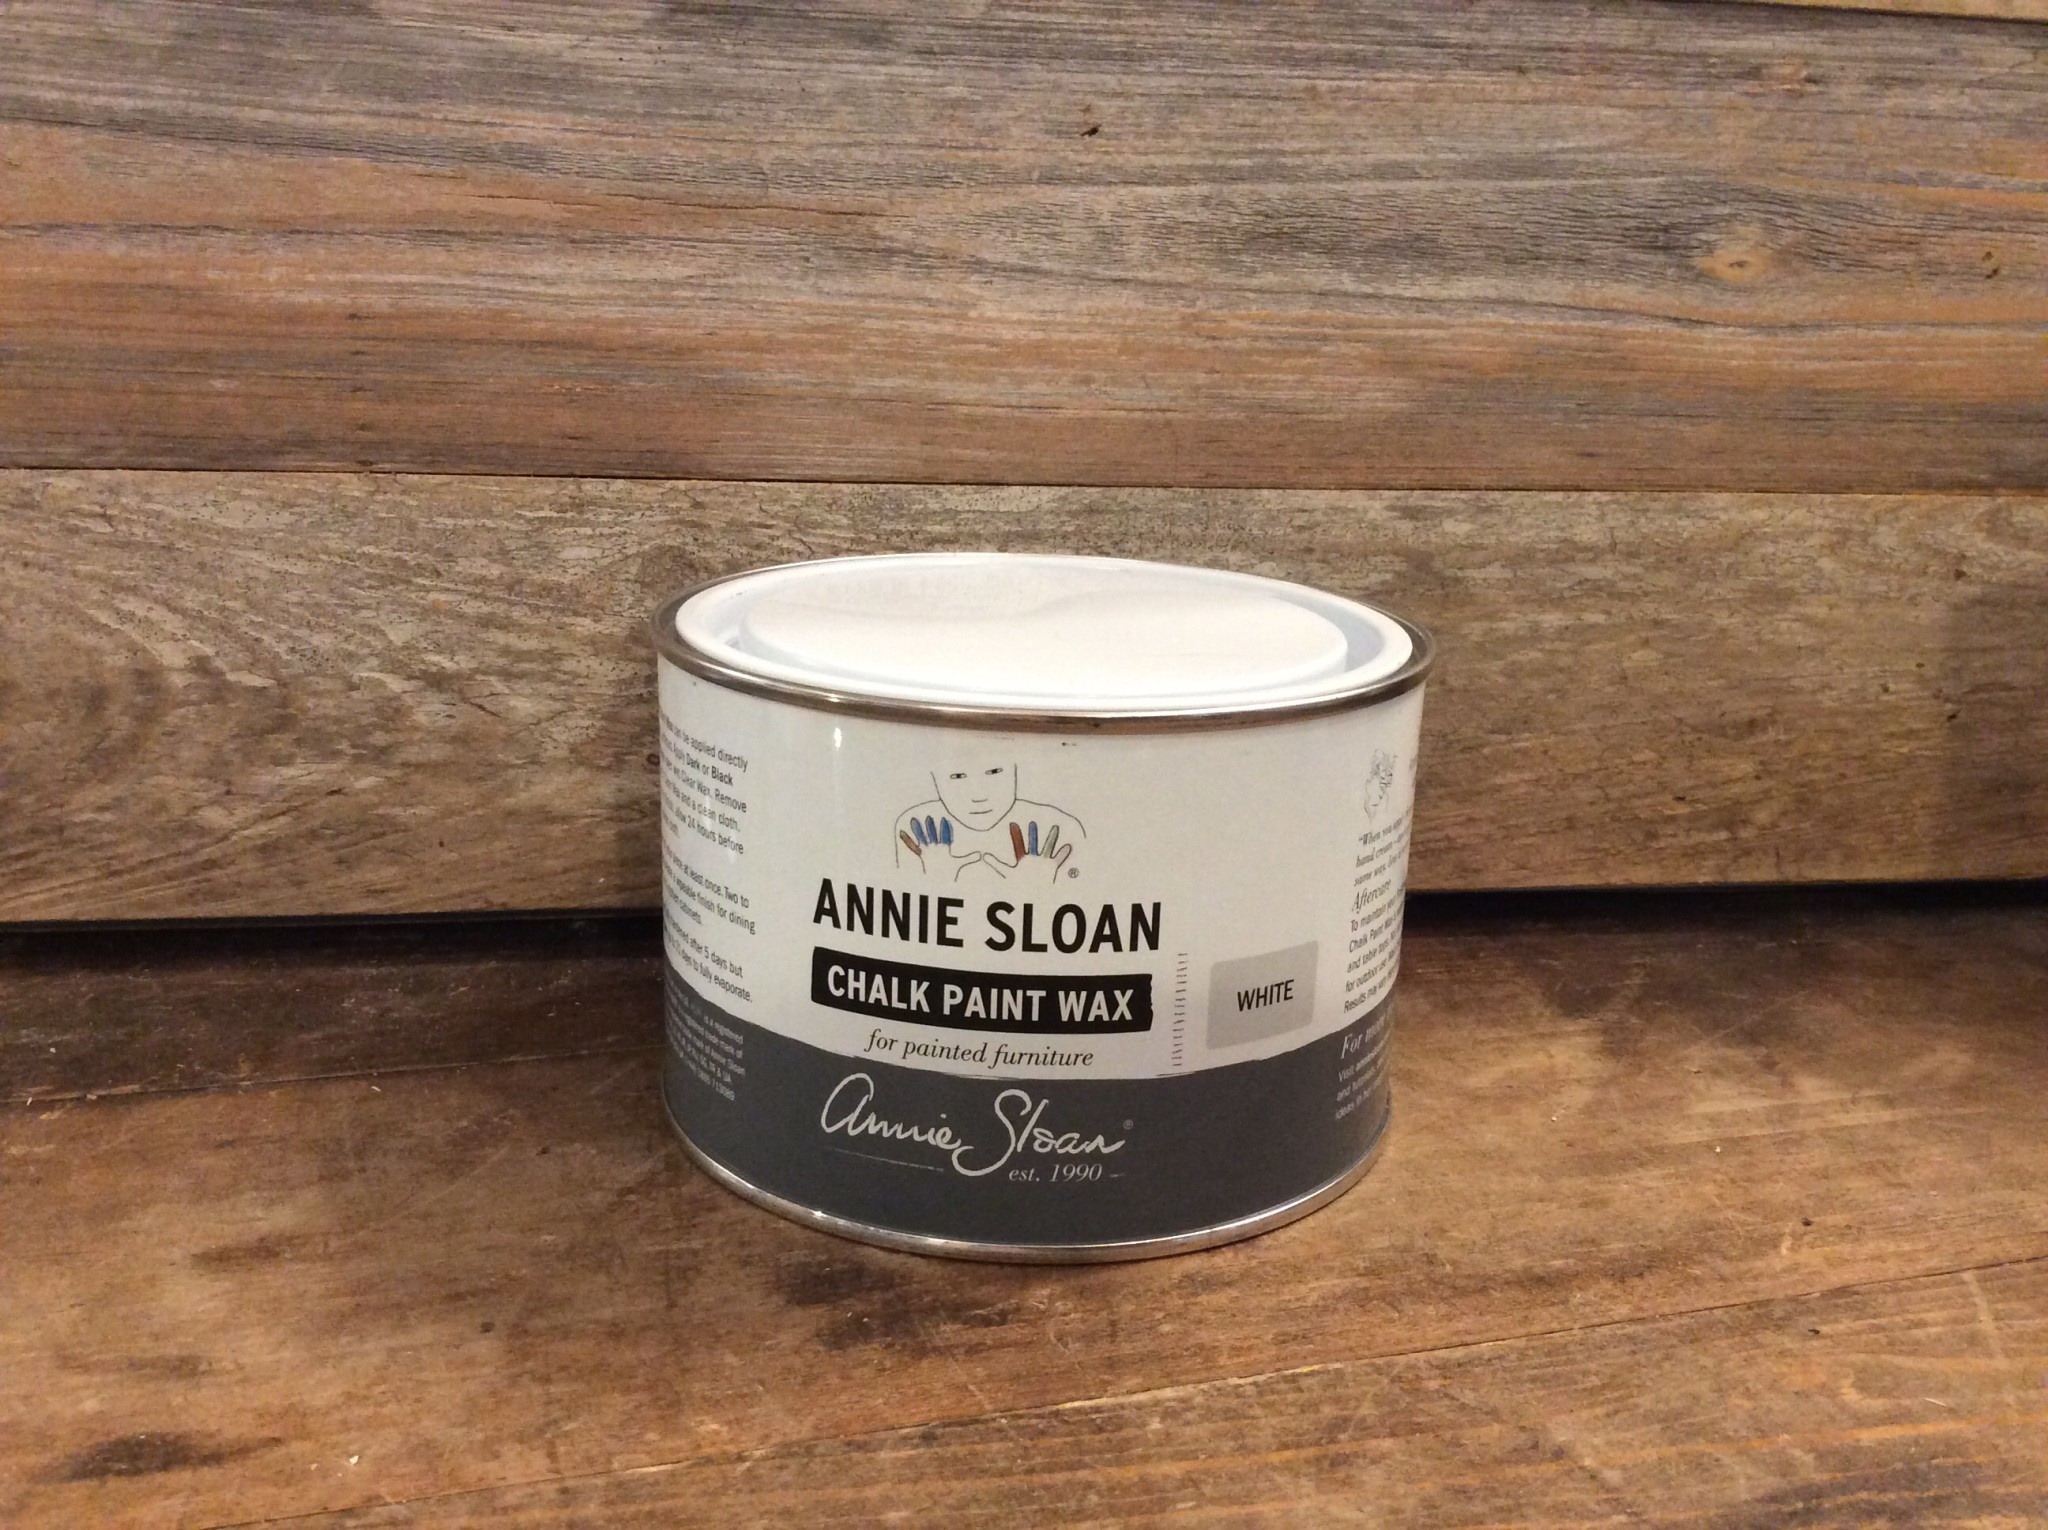 Black, Annie Sloan Chalk Paint Wax